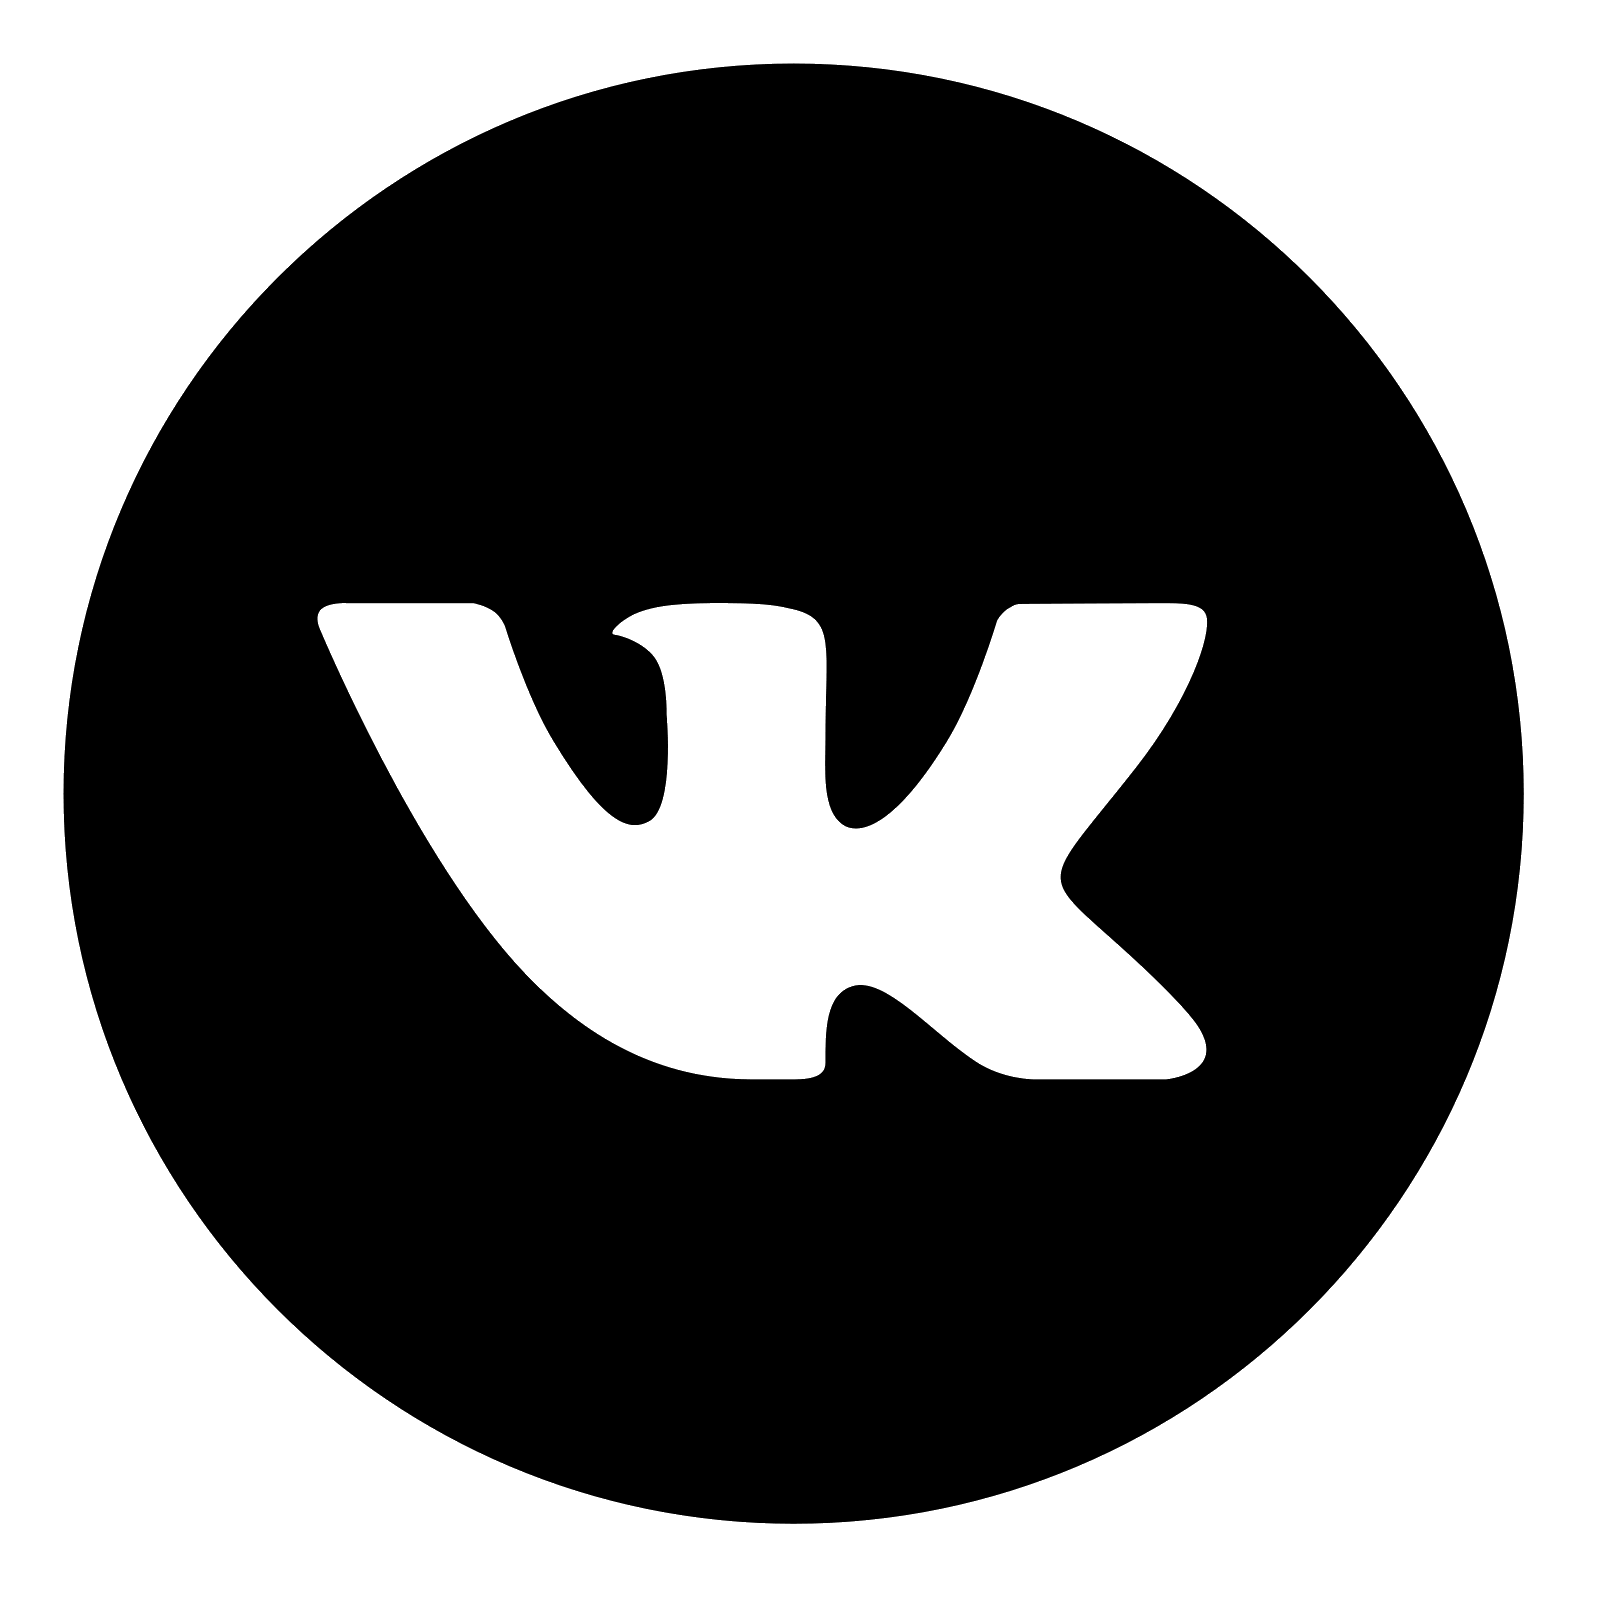 Серый логотип вк. Значок ВКОНТАКТЕ. Иконка ВК круглая. Логотип ВК круглый. Векторная иконка ВК.